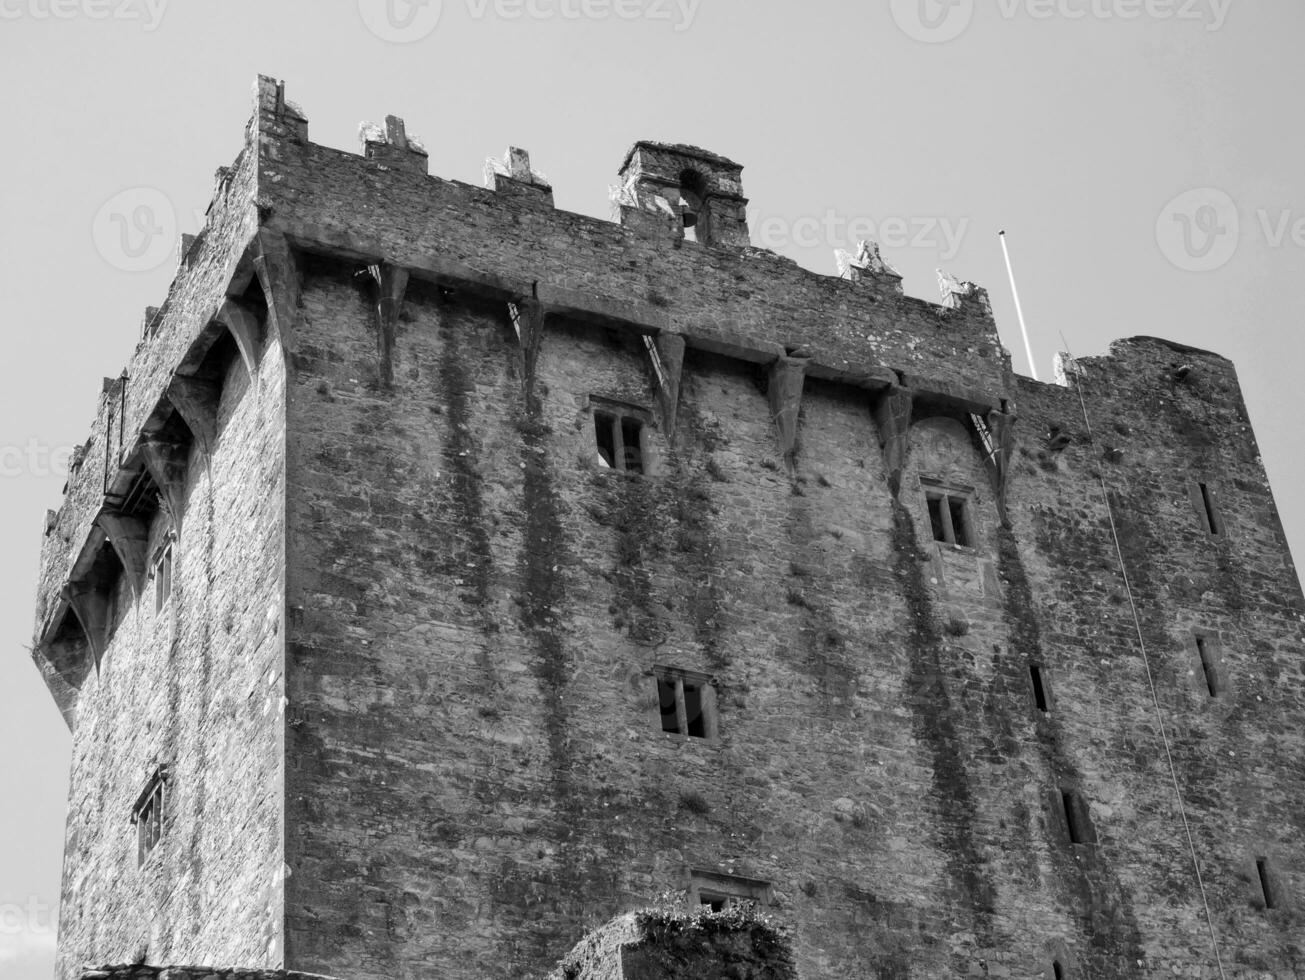 vecchio celtico castello Torre, blarney castello nel Irlanda, vecchio antico celtico fortezza foto